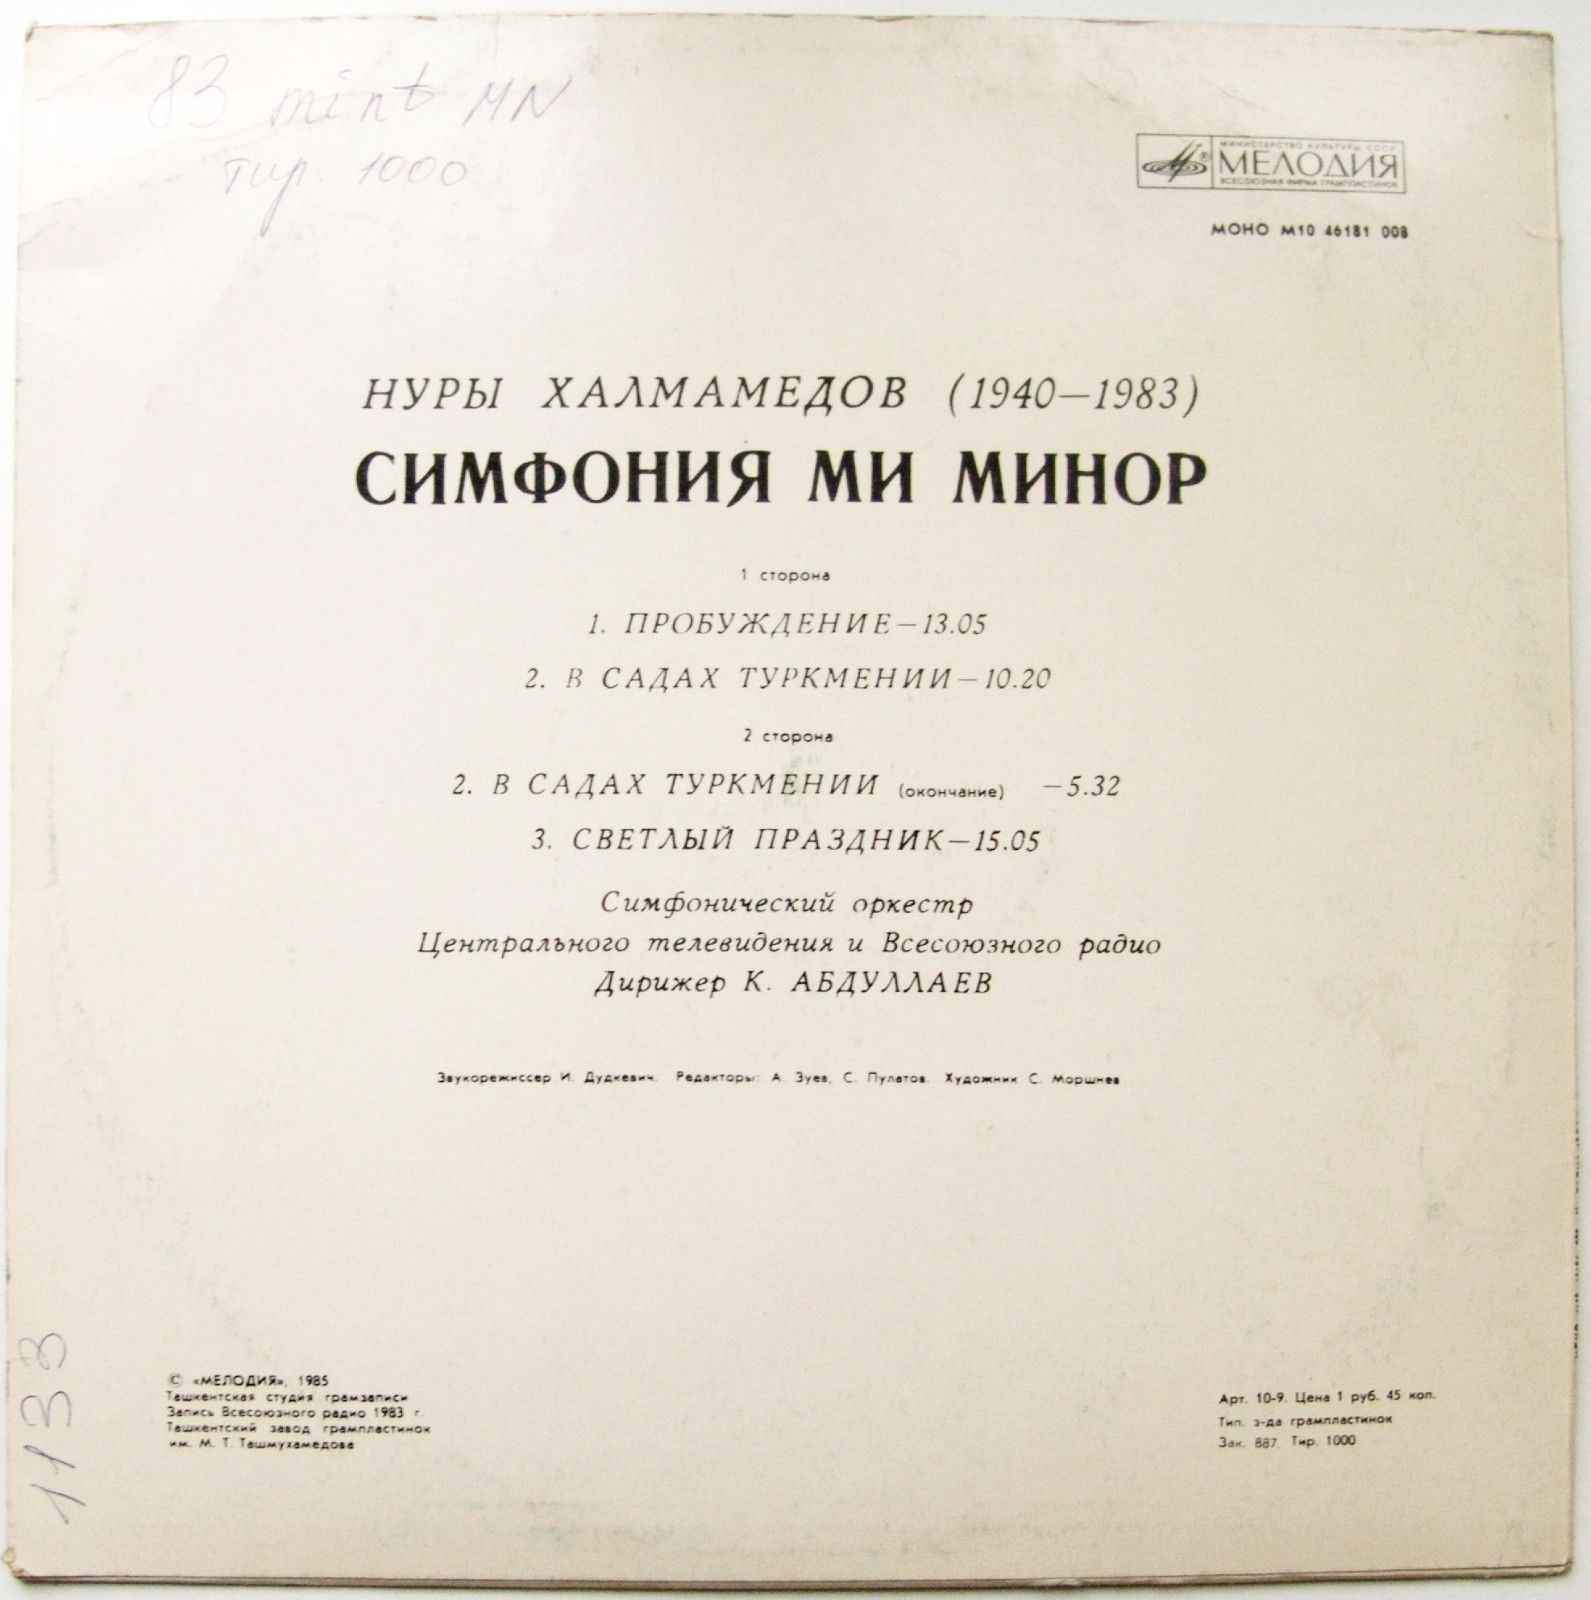 Н. ХАЛМАМЕДОВ (1940-1983): Симфония ми минор